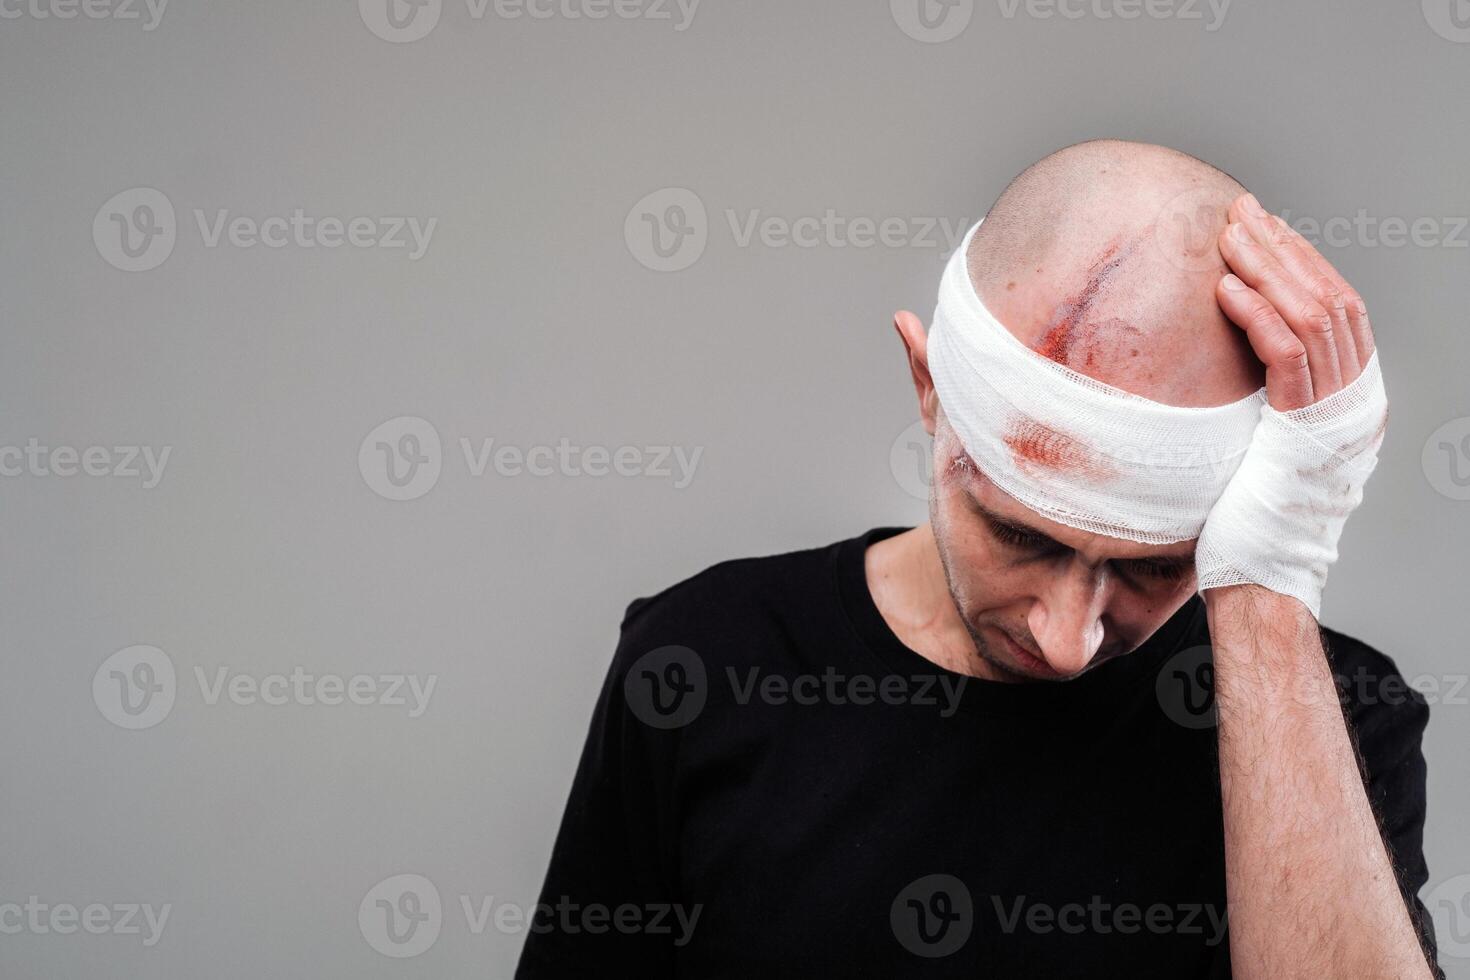 een gehavend en gehavend Mens in een zwart t-shirt staat tegen een grijs achtergrond, Holding zijn pijn doen hoofd met zijn handen verpakt in de omgeving van het foto